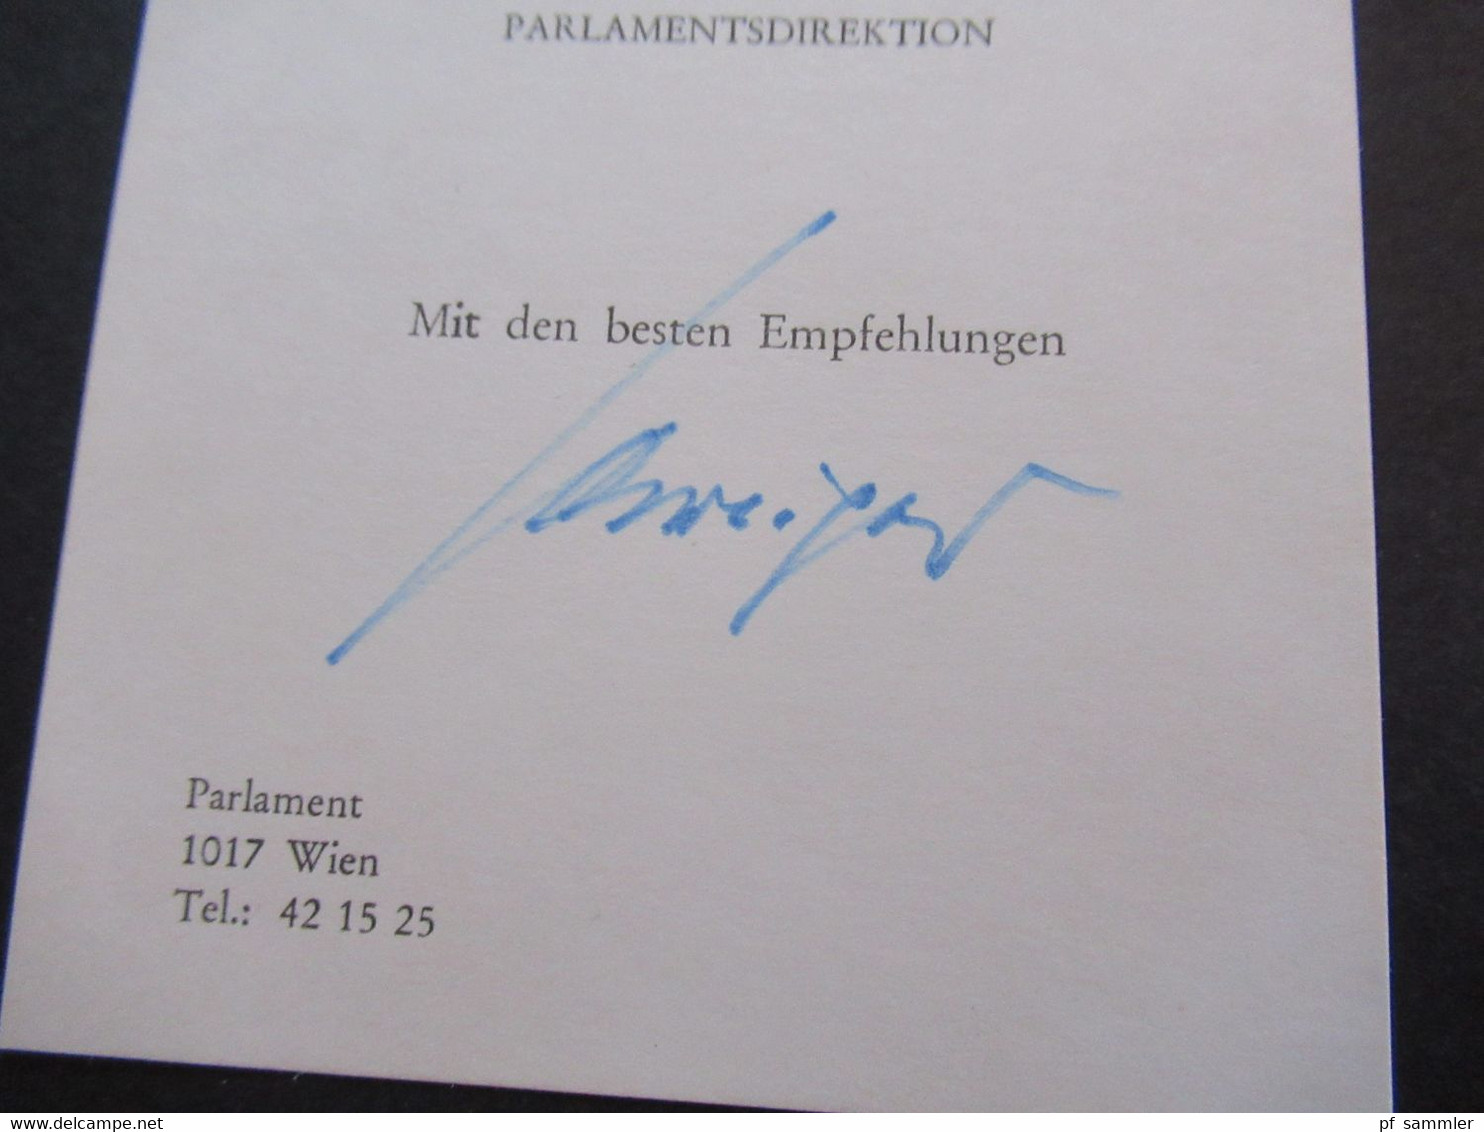 Österreich 3 Visitenkarten mit Unterschrift Parlamentsdirektion Mit den besten Empfehlungen. Autogramme Wien Parlament